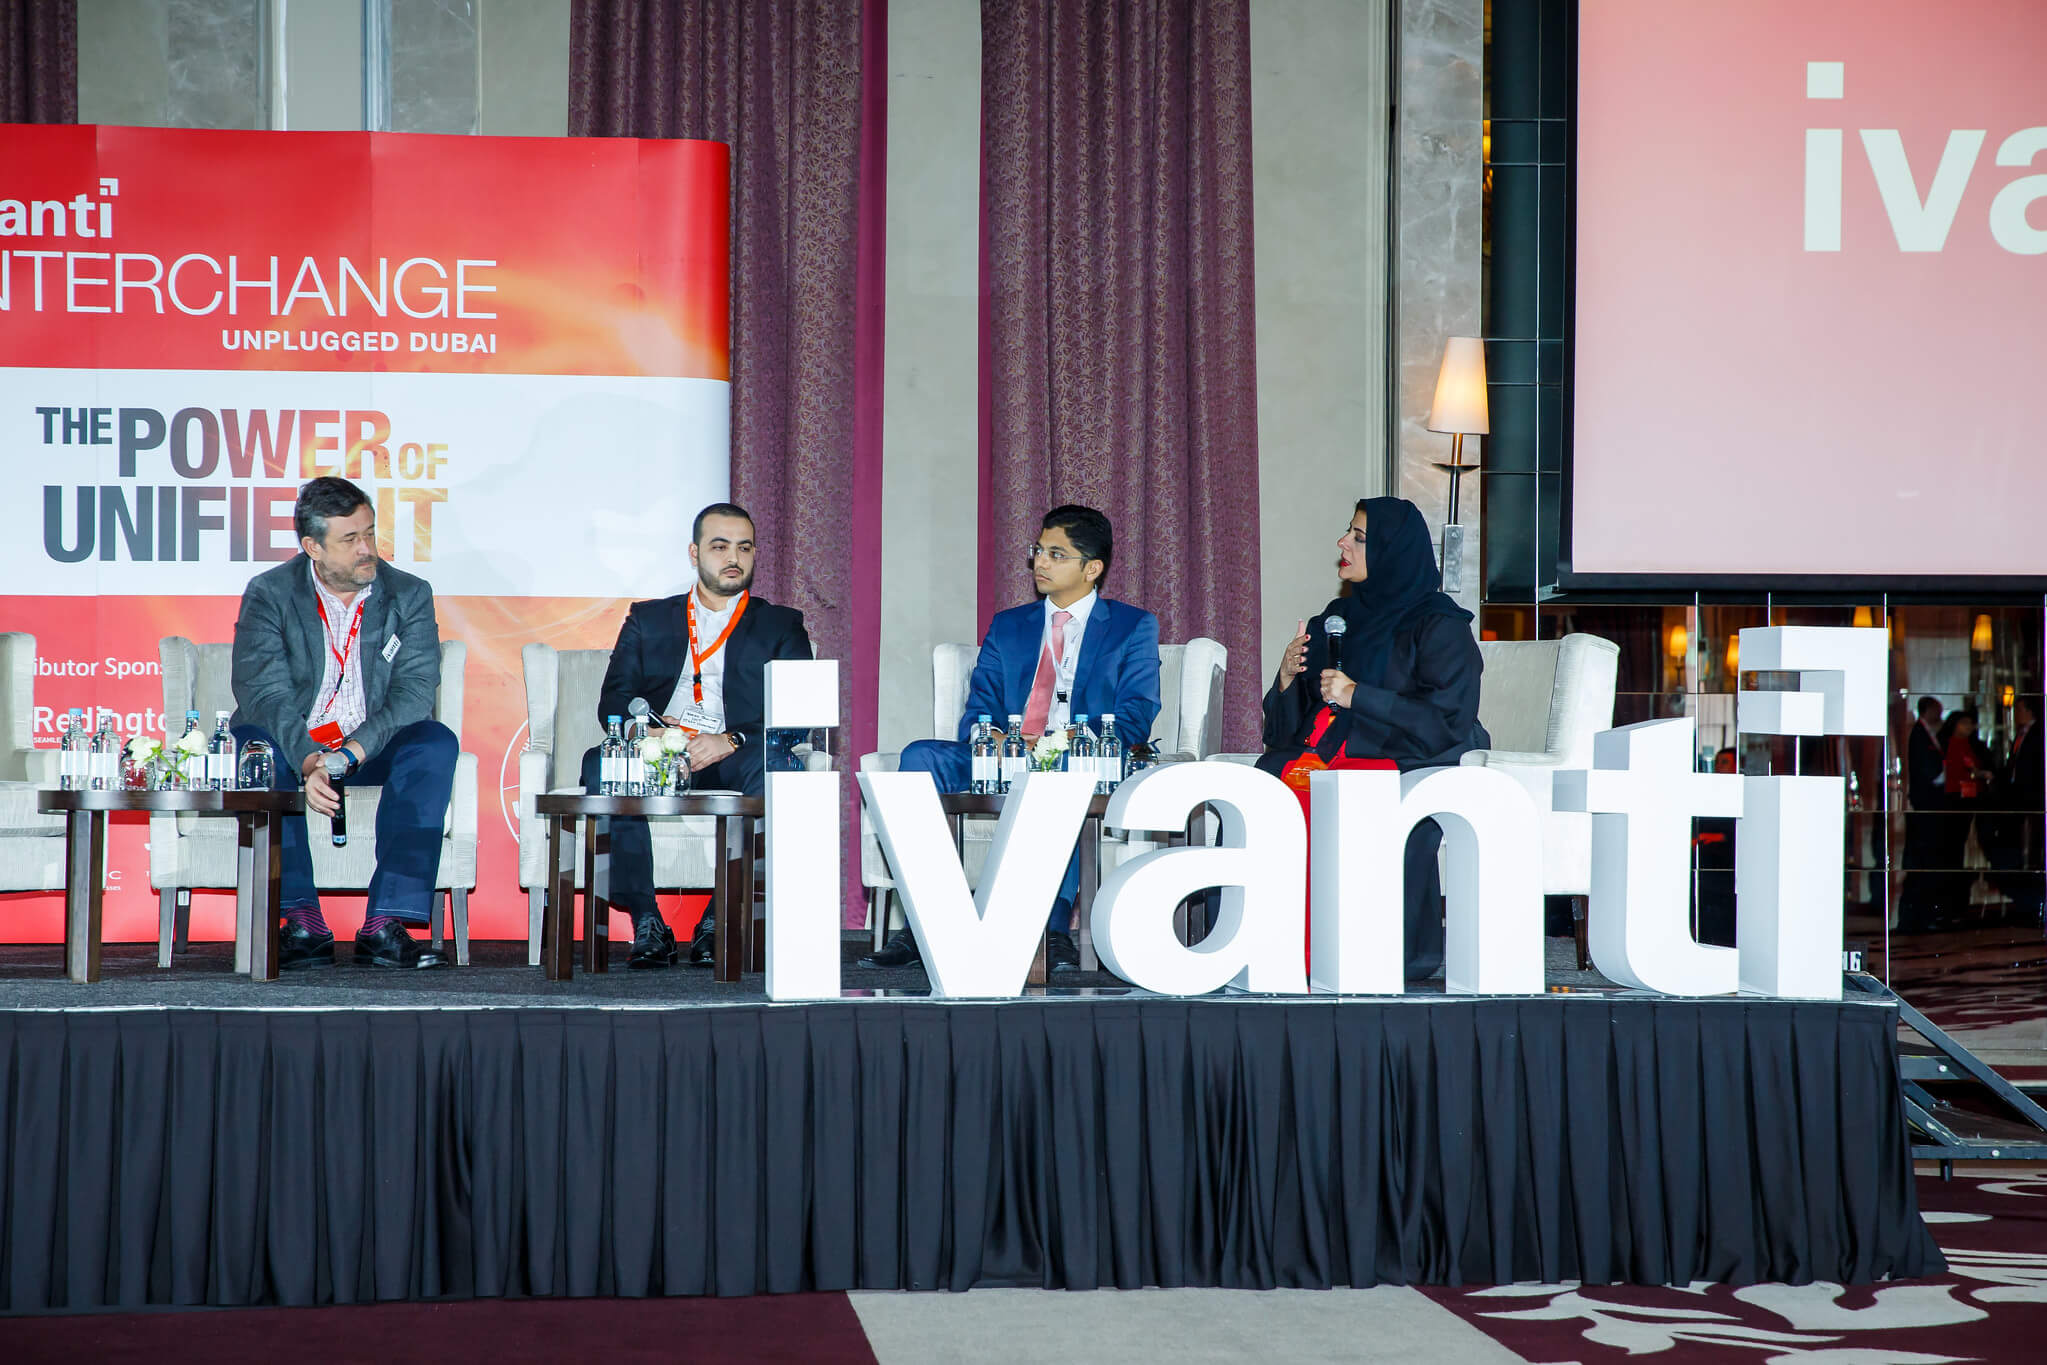 Ivanti Interchange Unplugged: unlocking the power of unified IT